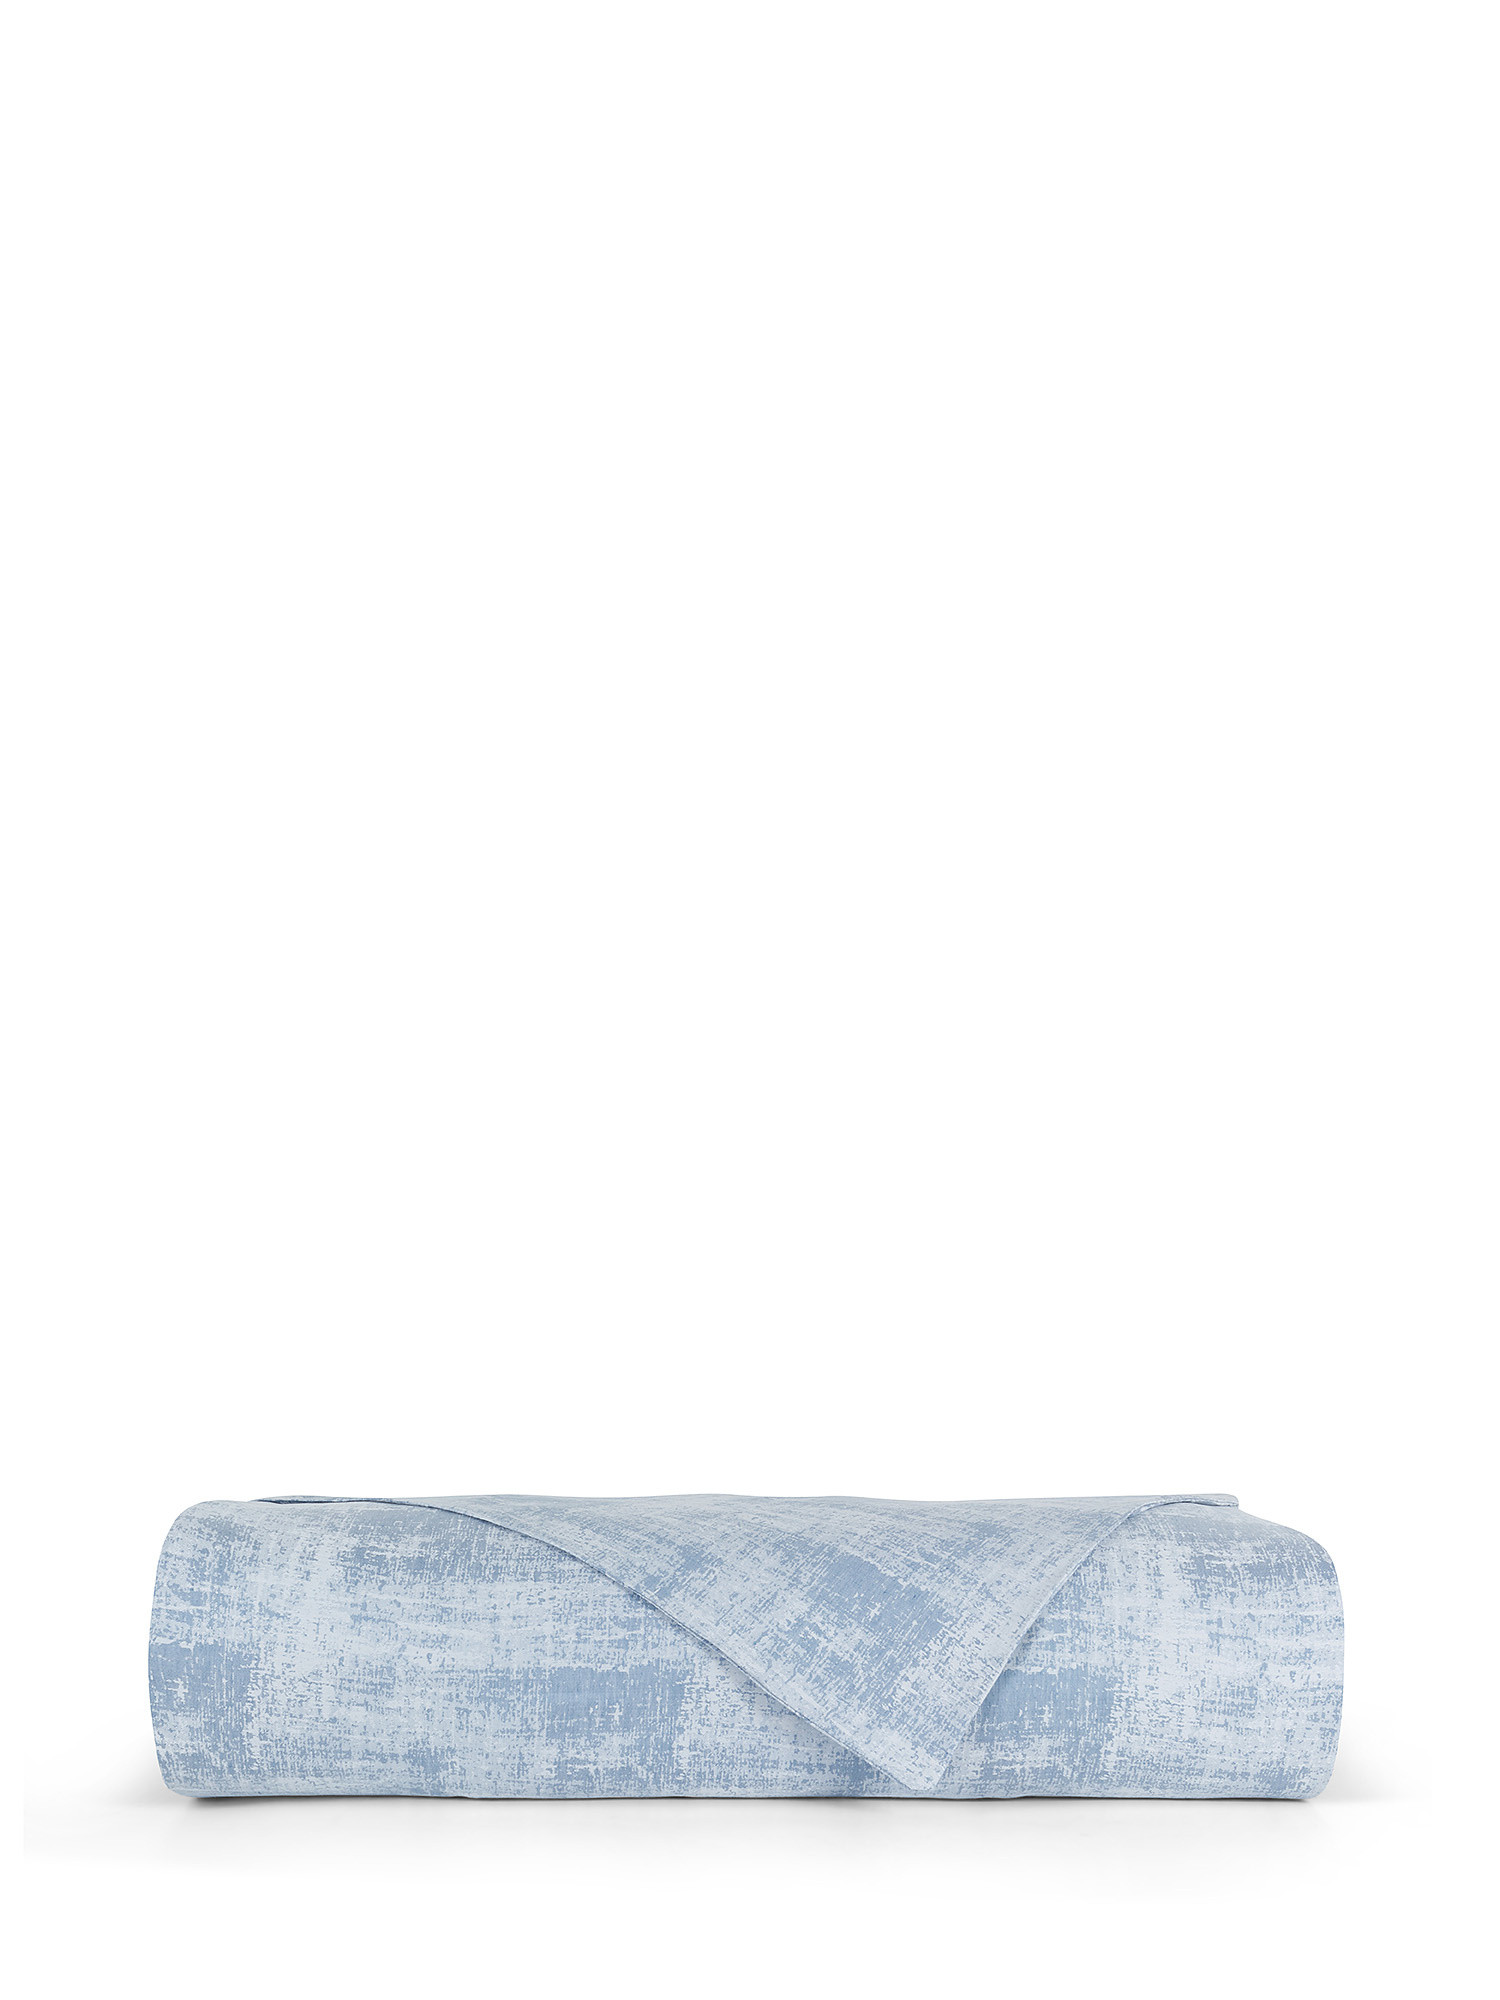 Denim effect washed linen blend duvet cover, Light Blue, large image number 1